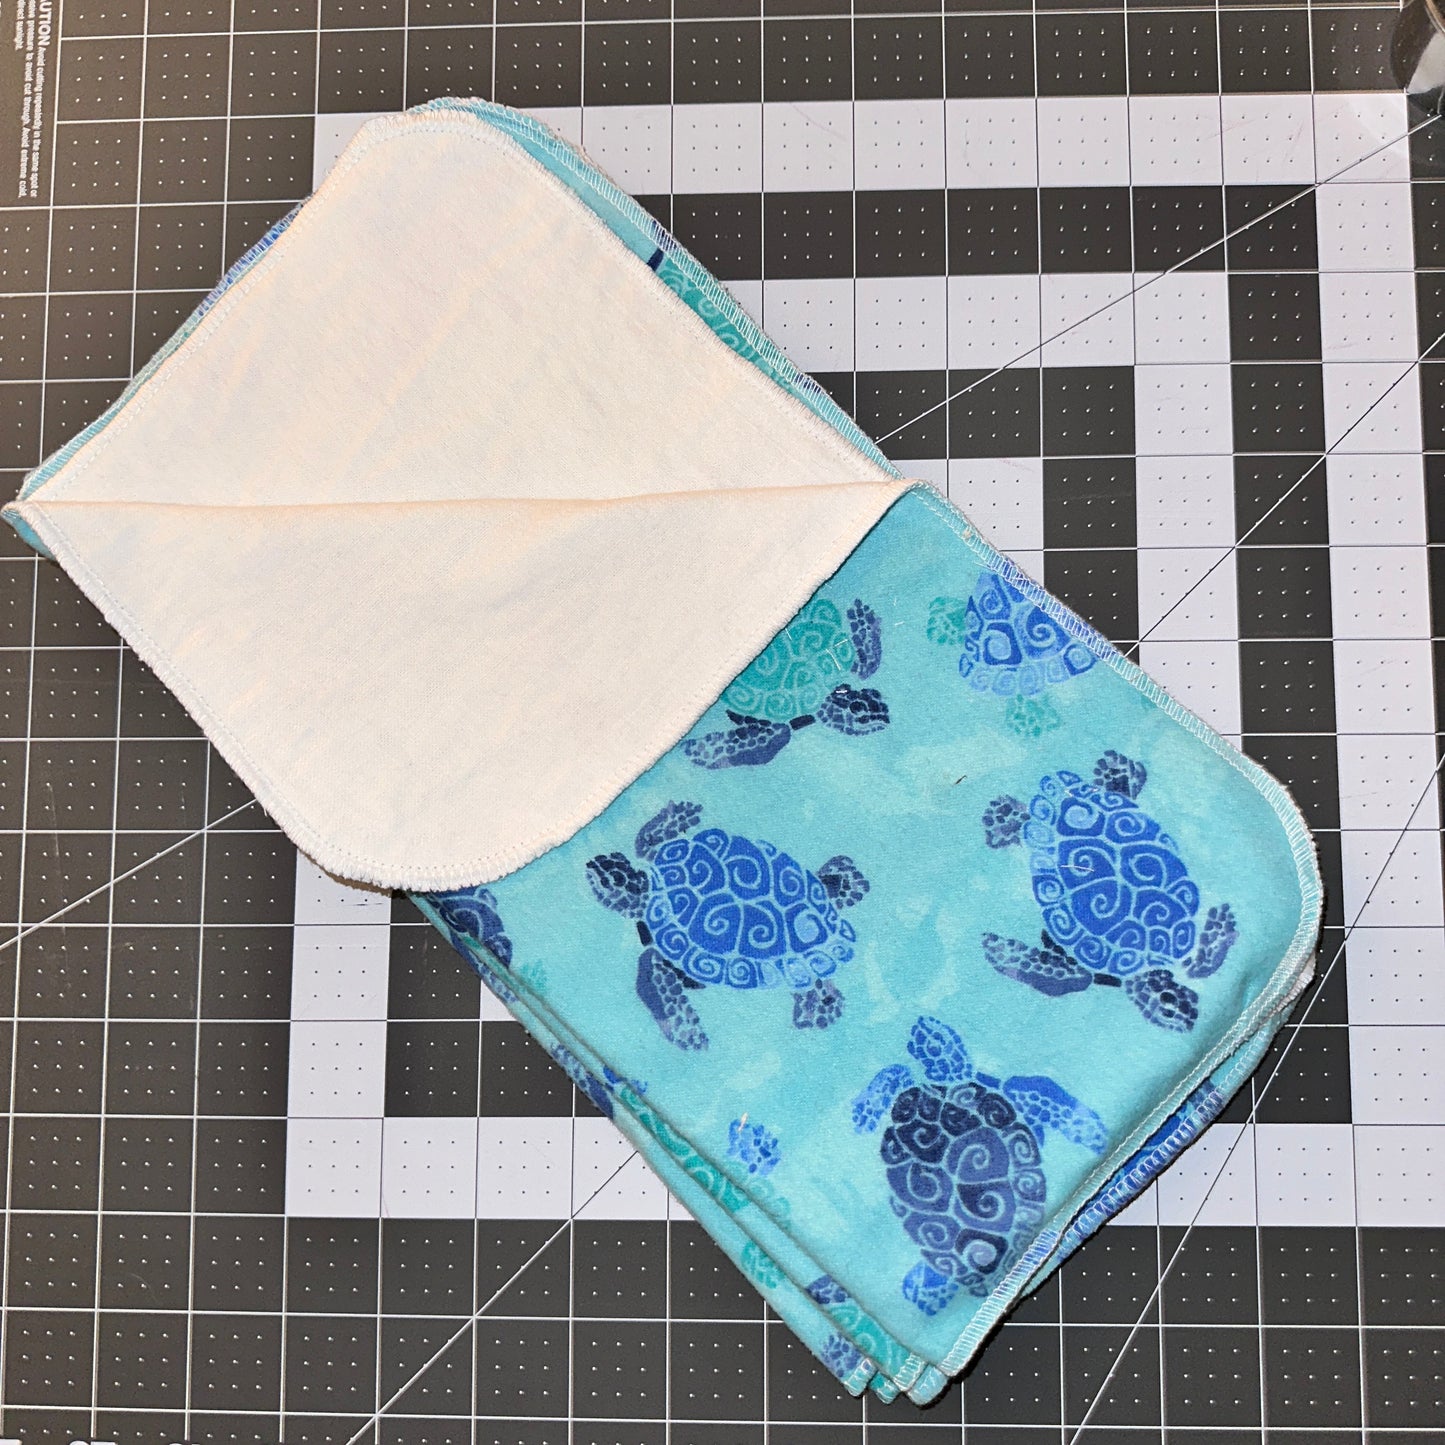 2 ply cotton unpaper towels (5 pack)